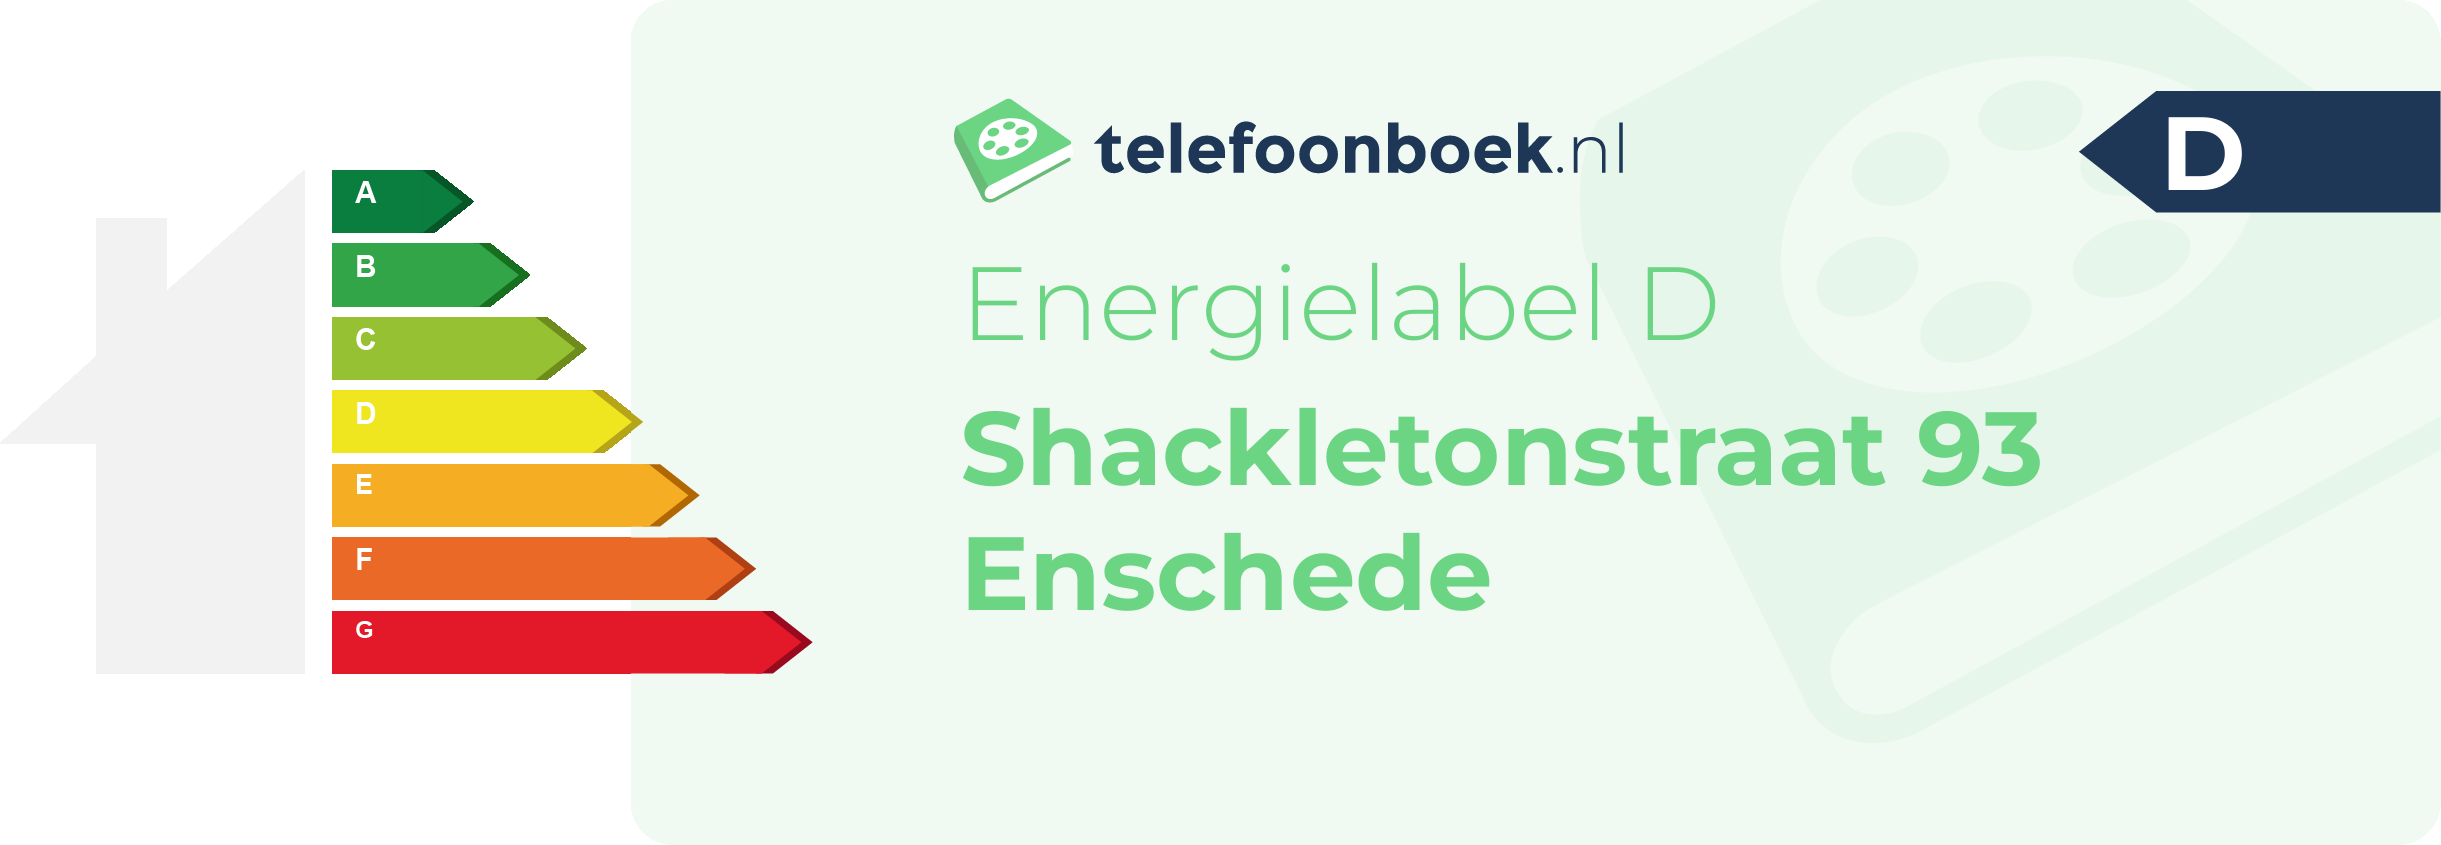 Energielabel Shackletonstraat 93 Enschede